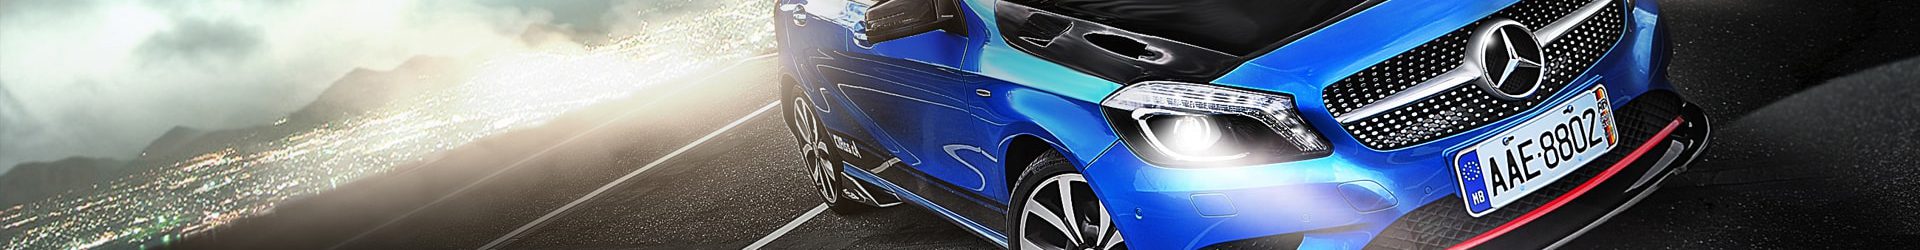 –餓狼&學姊– Mercedes Benz CLA45 AMG Edition1 開箱拍攝 Part.2